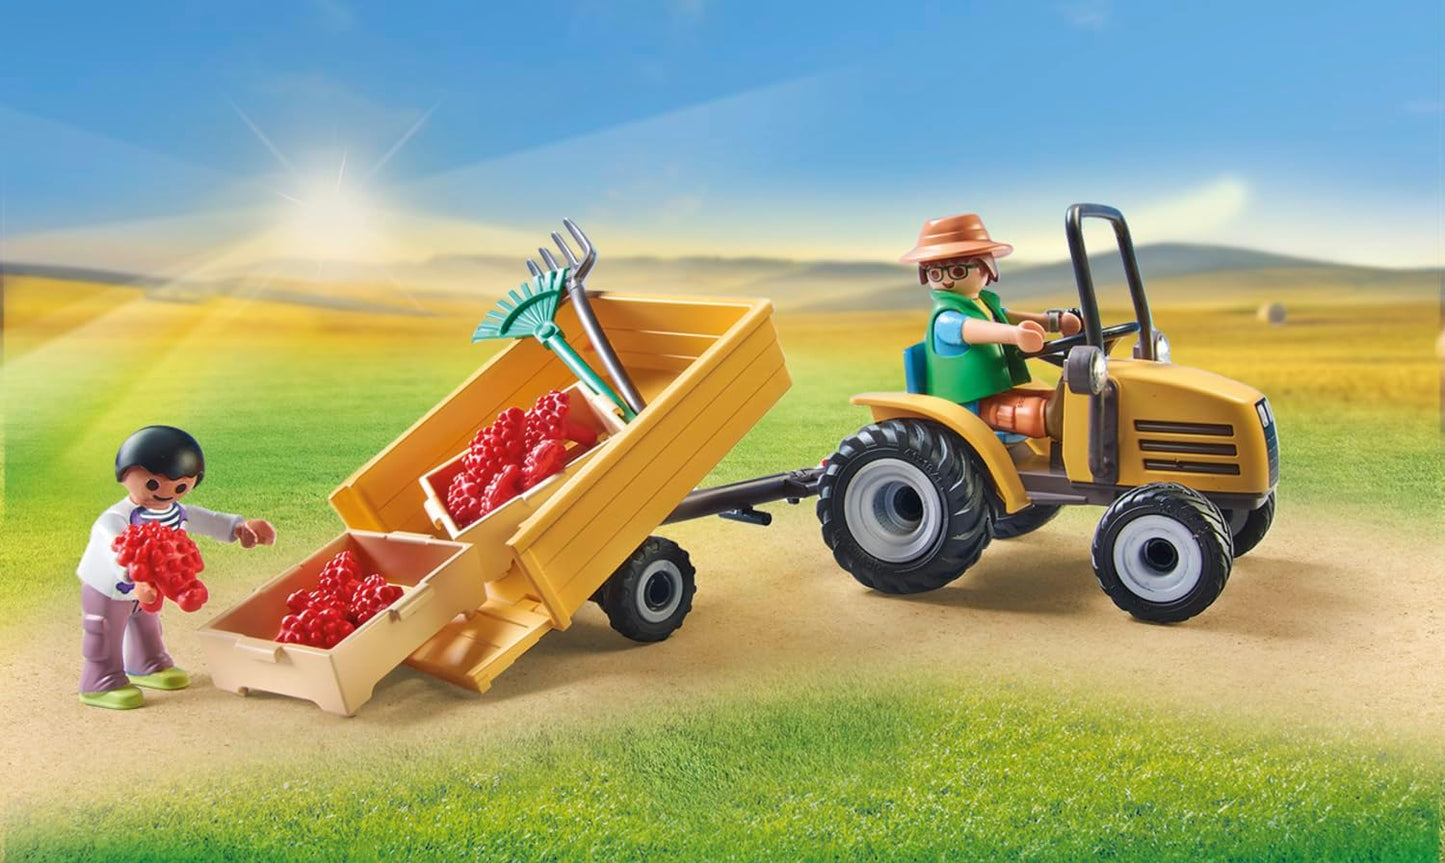 Playmobil  71442 País: Trator com reboque e tanque de água, colheita fresca na fazenda, aprendizagem sobre o meio ambiente, encenação divertida e imaginativa, conjuntos de jogos sustentáveis adequados para crianças a partir de 4 anos